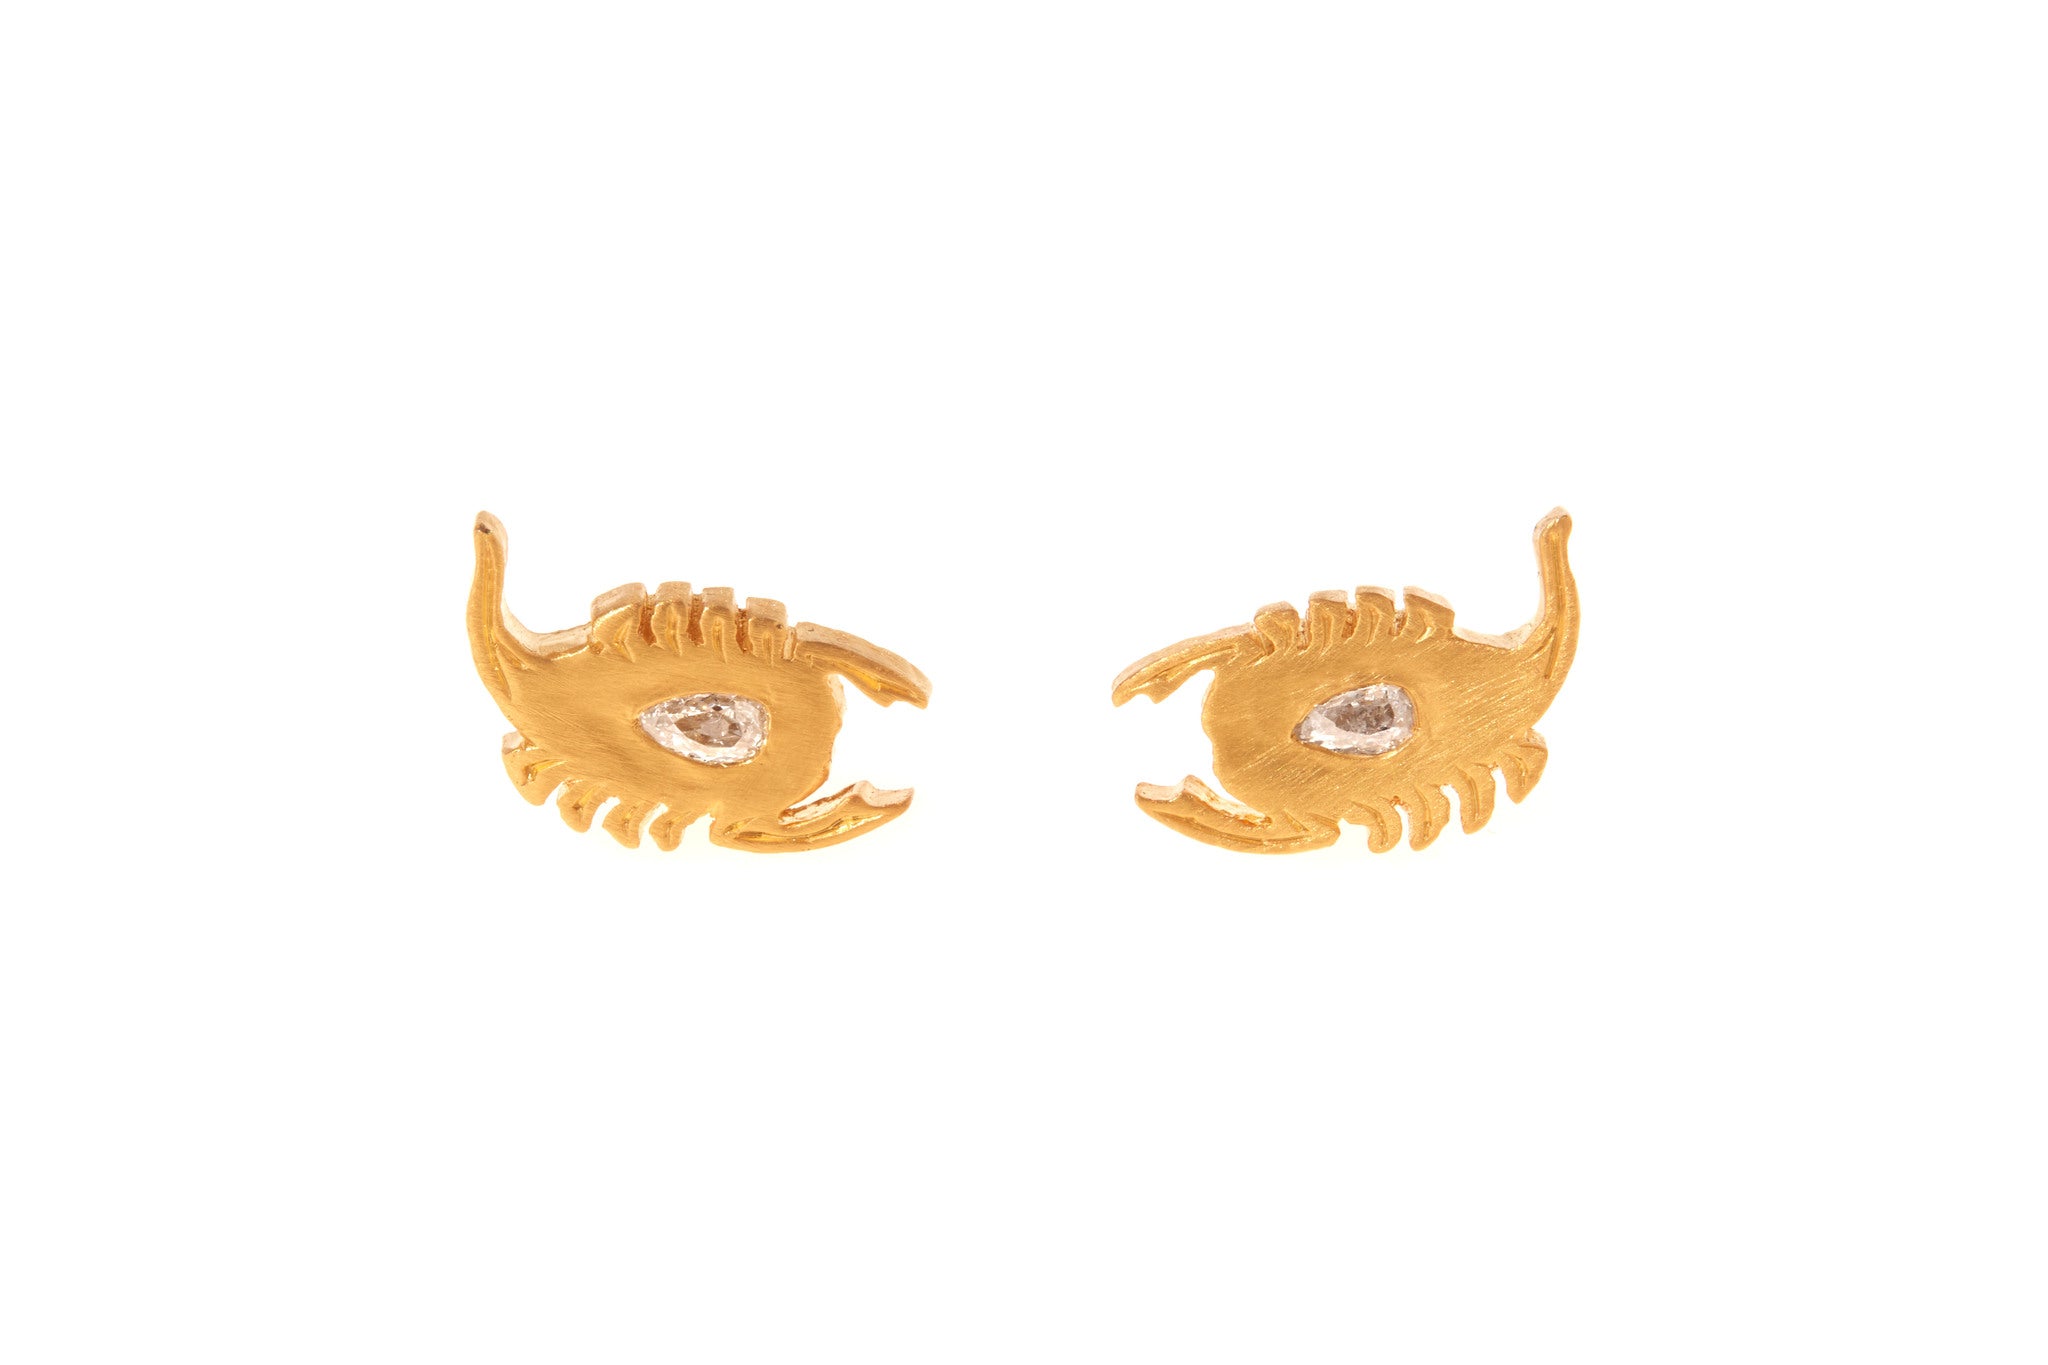 darius jewels mini dendera diamond scorpion scorpio zodiac earrings 18k yellow gold antique old pear cut diamond darius khonsary